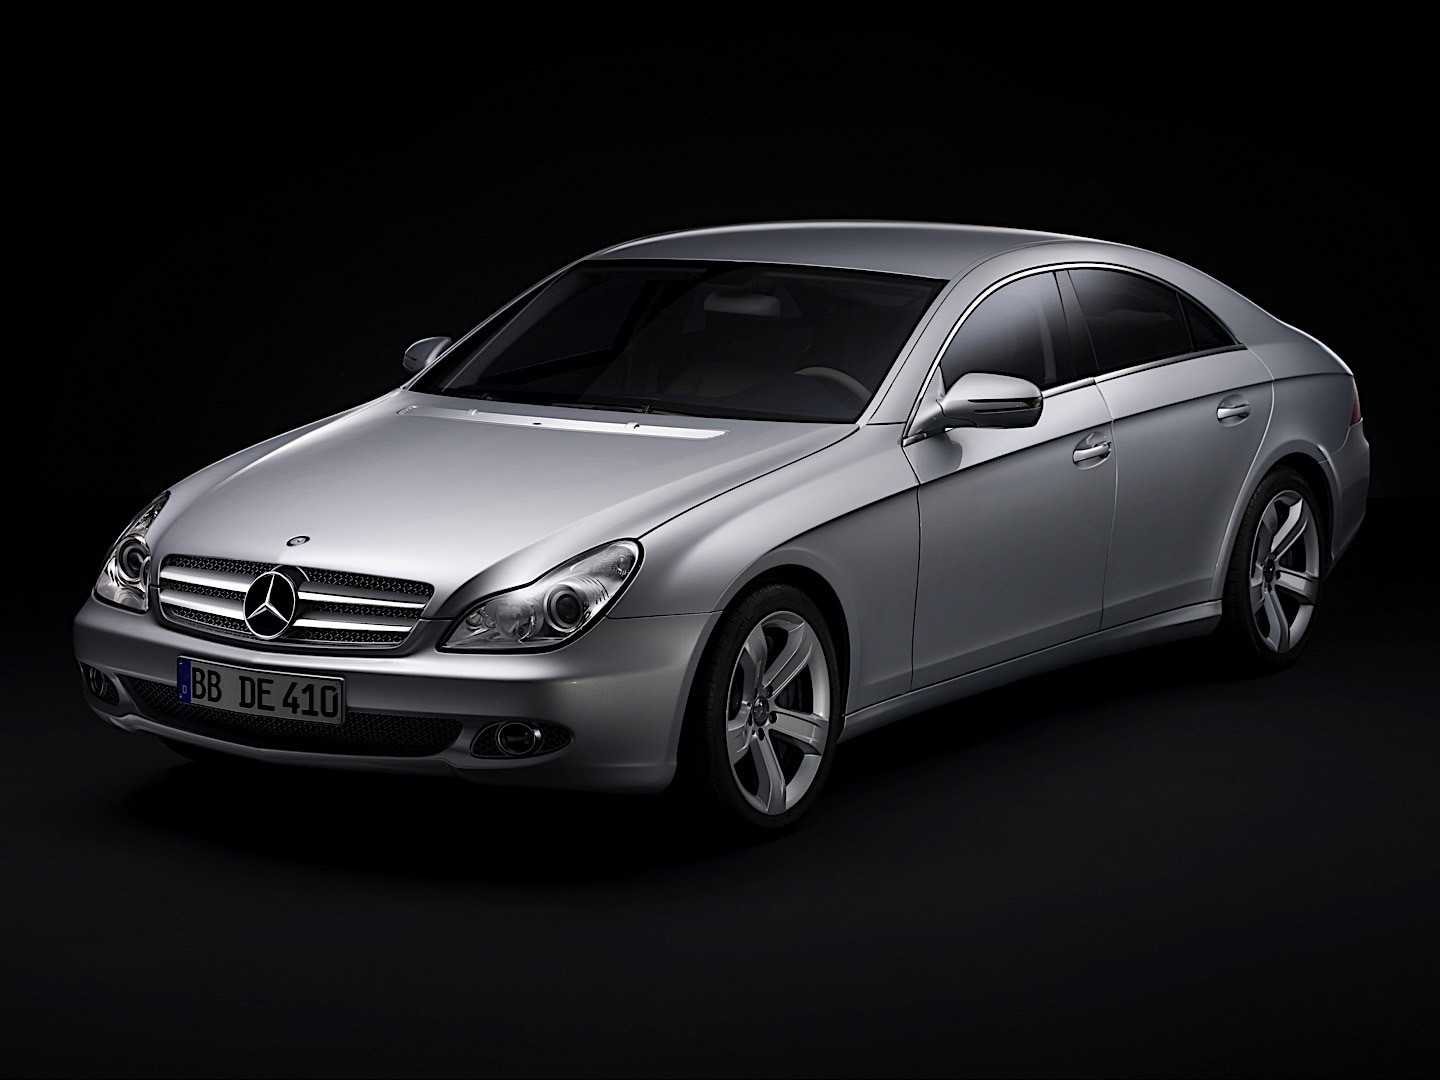 Mercedes cls 350 (c 2004 по 2006) — технические характеристики автомобиля